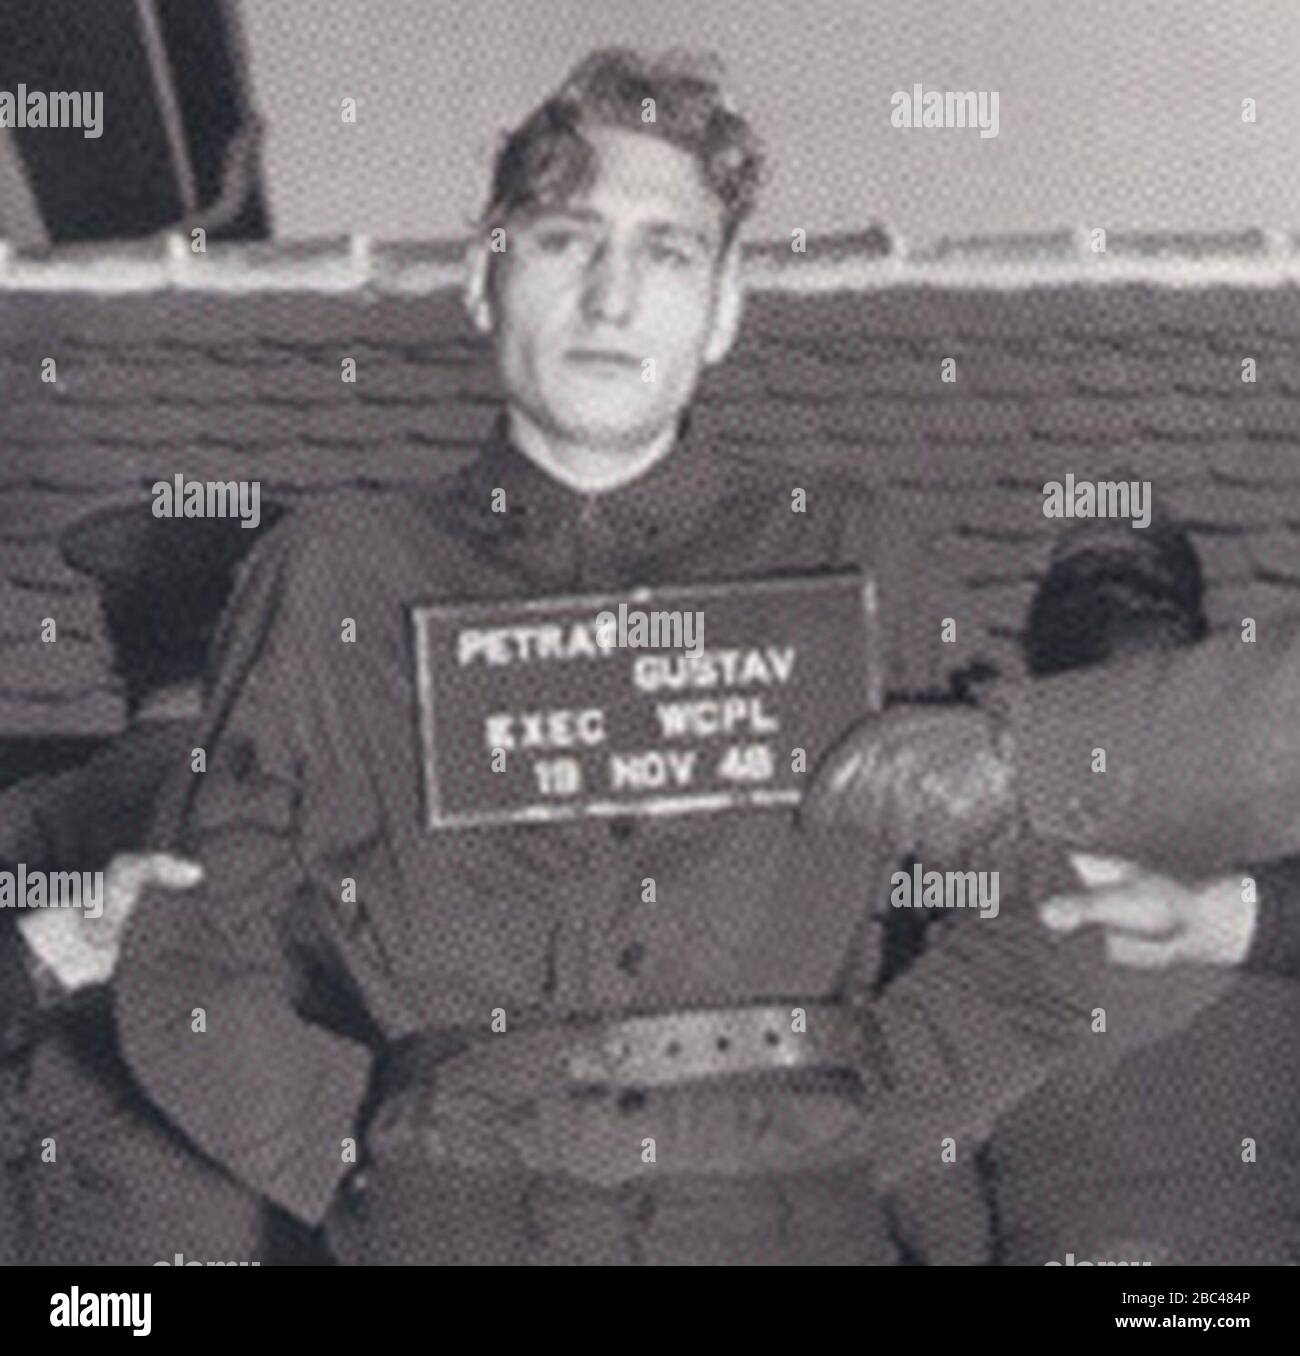 Gustav Petrat vor der Hinrichtung durch hängen mit dem Schild "PETRAT GUSTAV EXEC WCPL 19 Nov 48" (beschnitten). Stockfoto